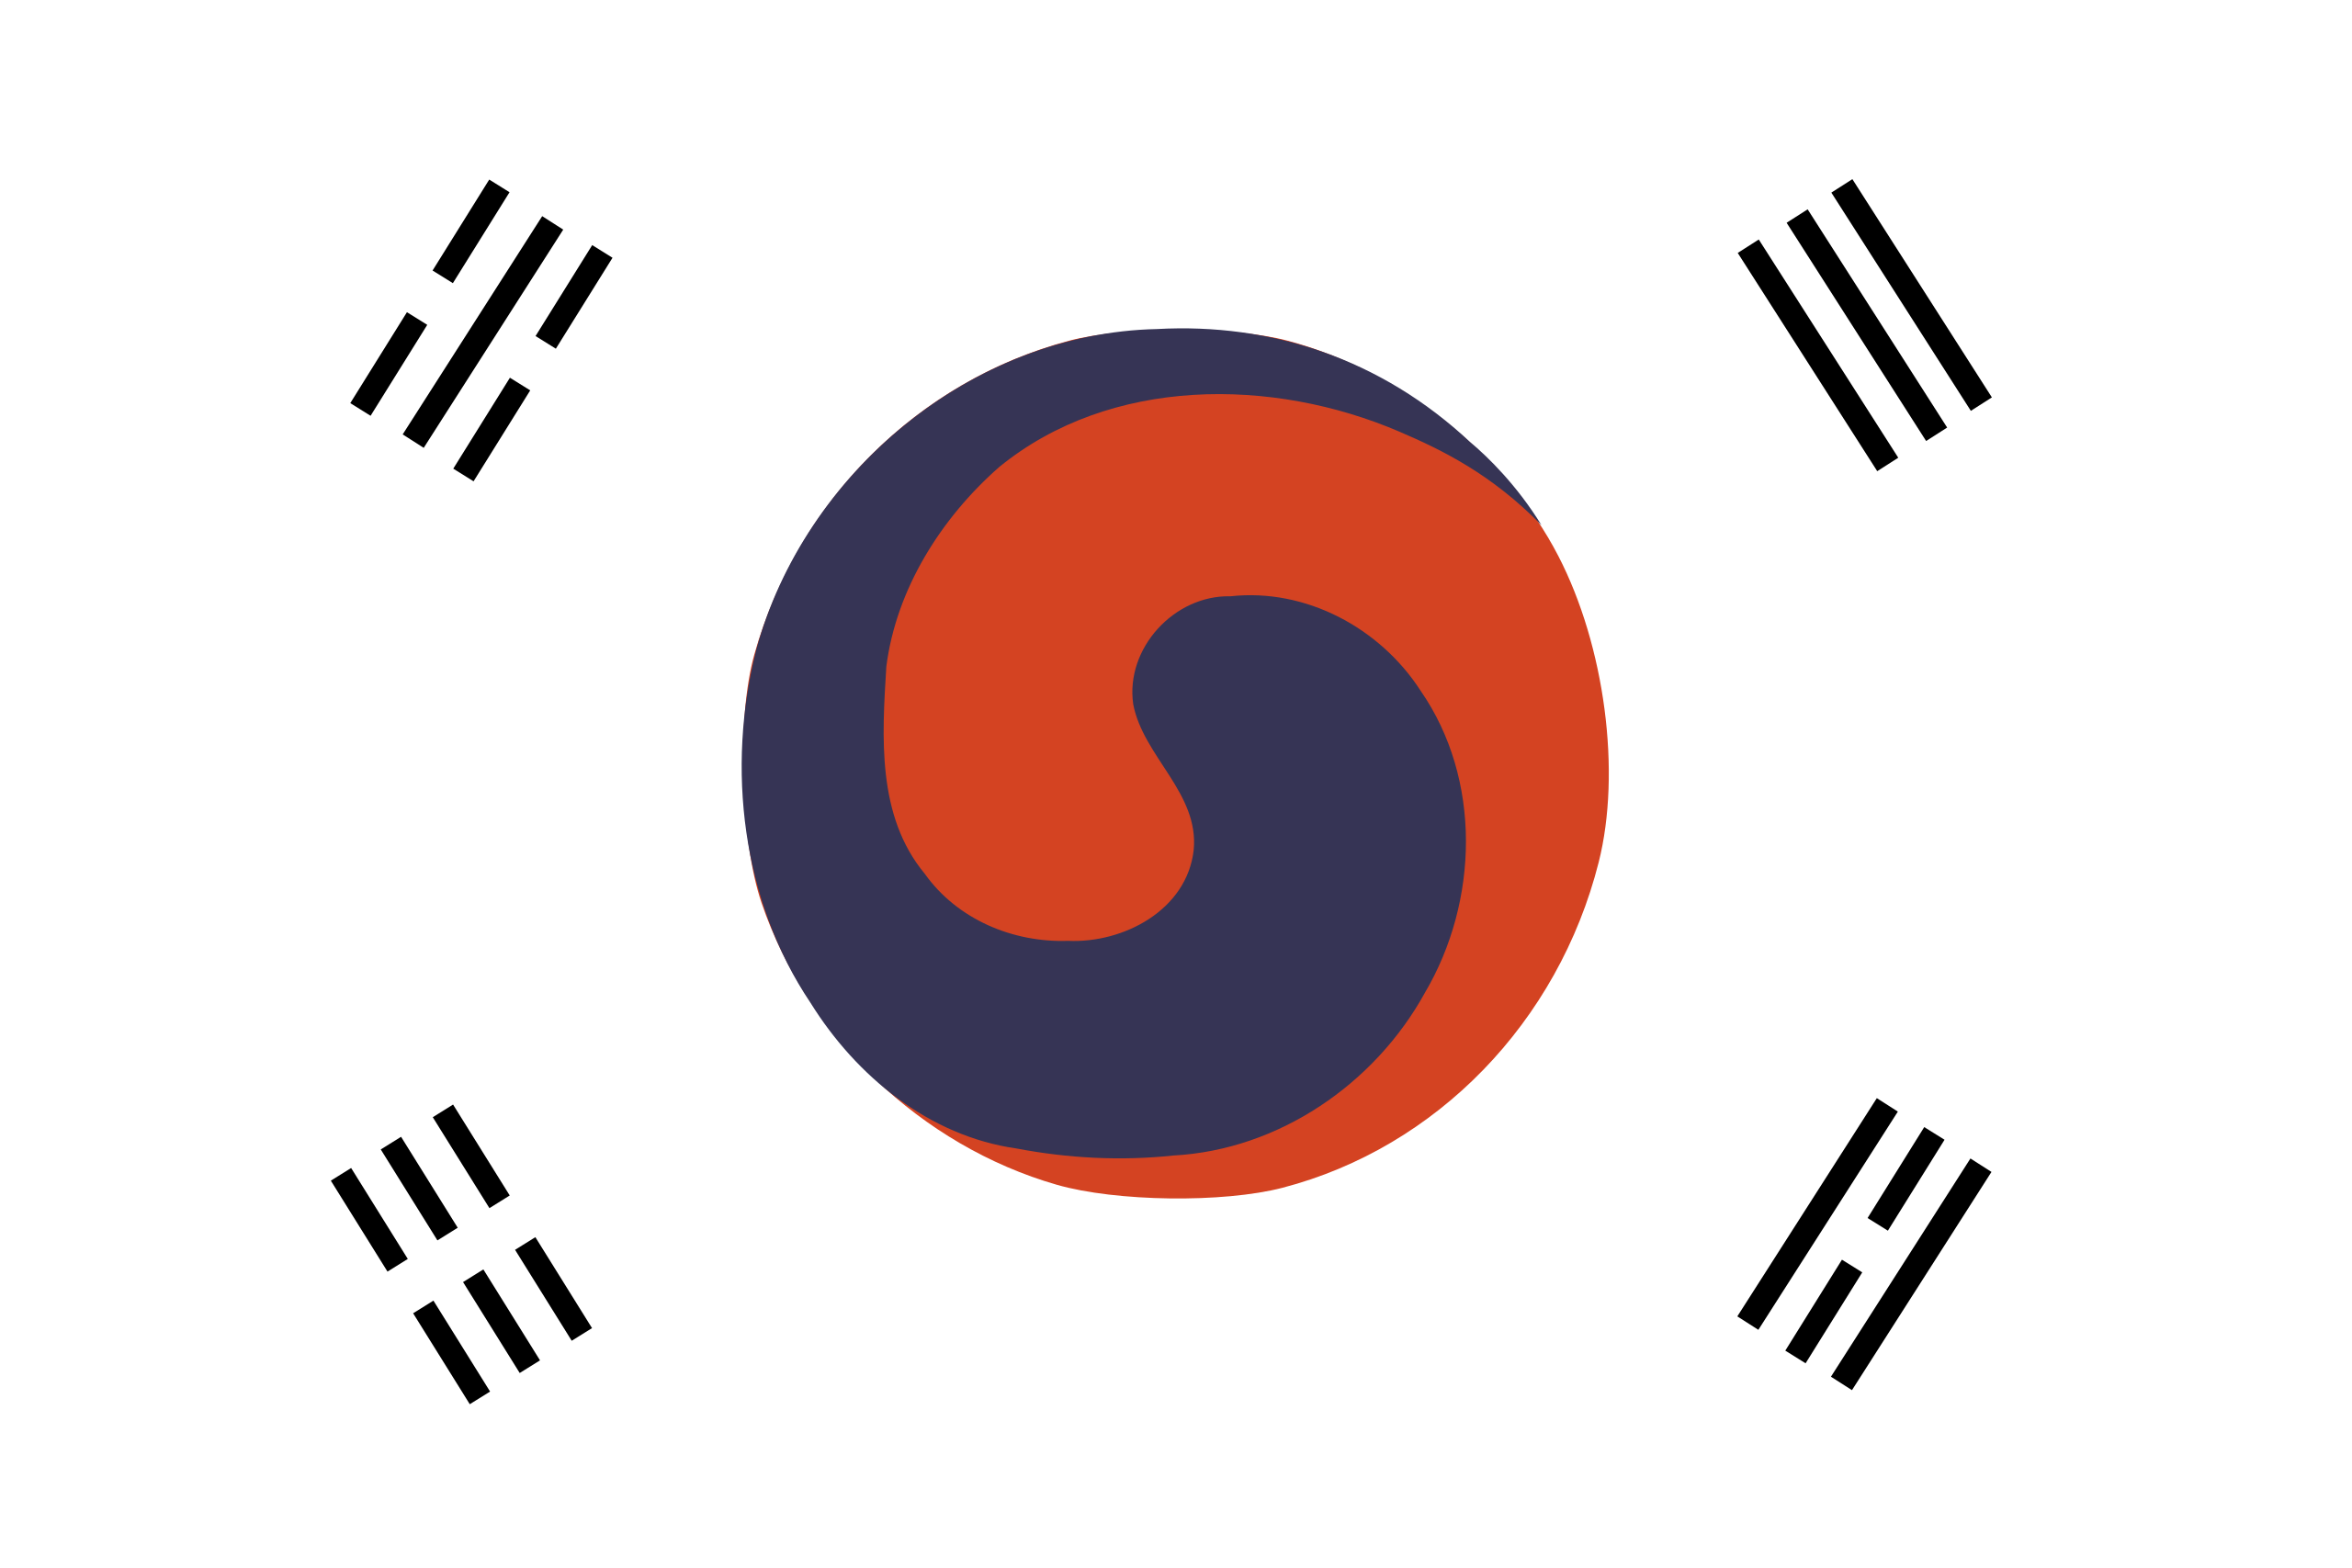 герб флаг кореи